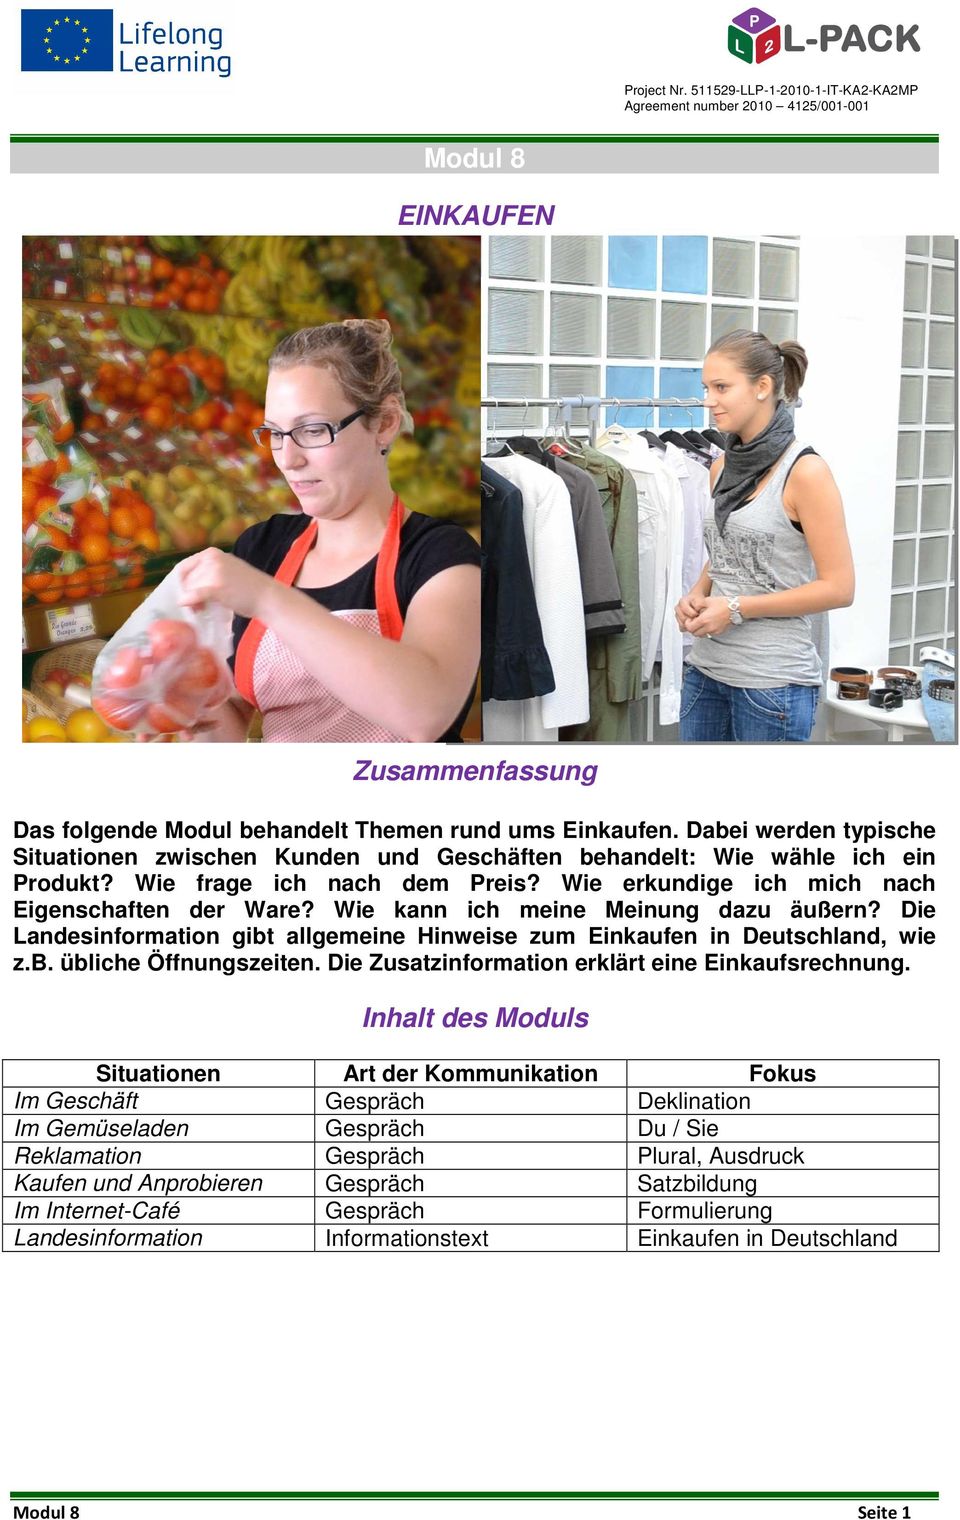 Die Landesinformation gibt allgemeine Hinweise zum Einkaufen in Deutschland, wie z.b. übliche Öffnungszeiten. Die Zusatzinformation erklärt eine Einkaufsrechnung.